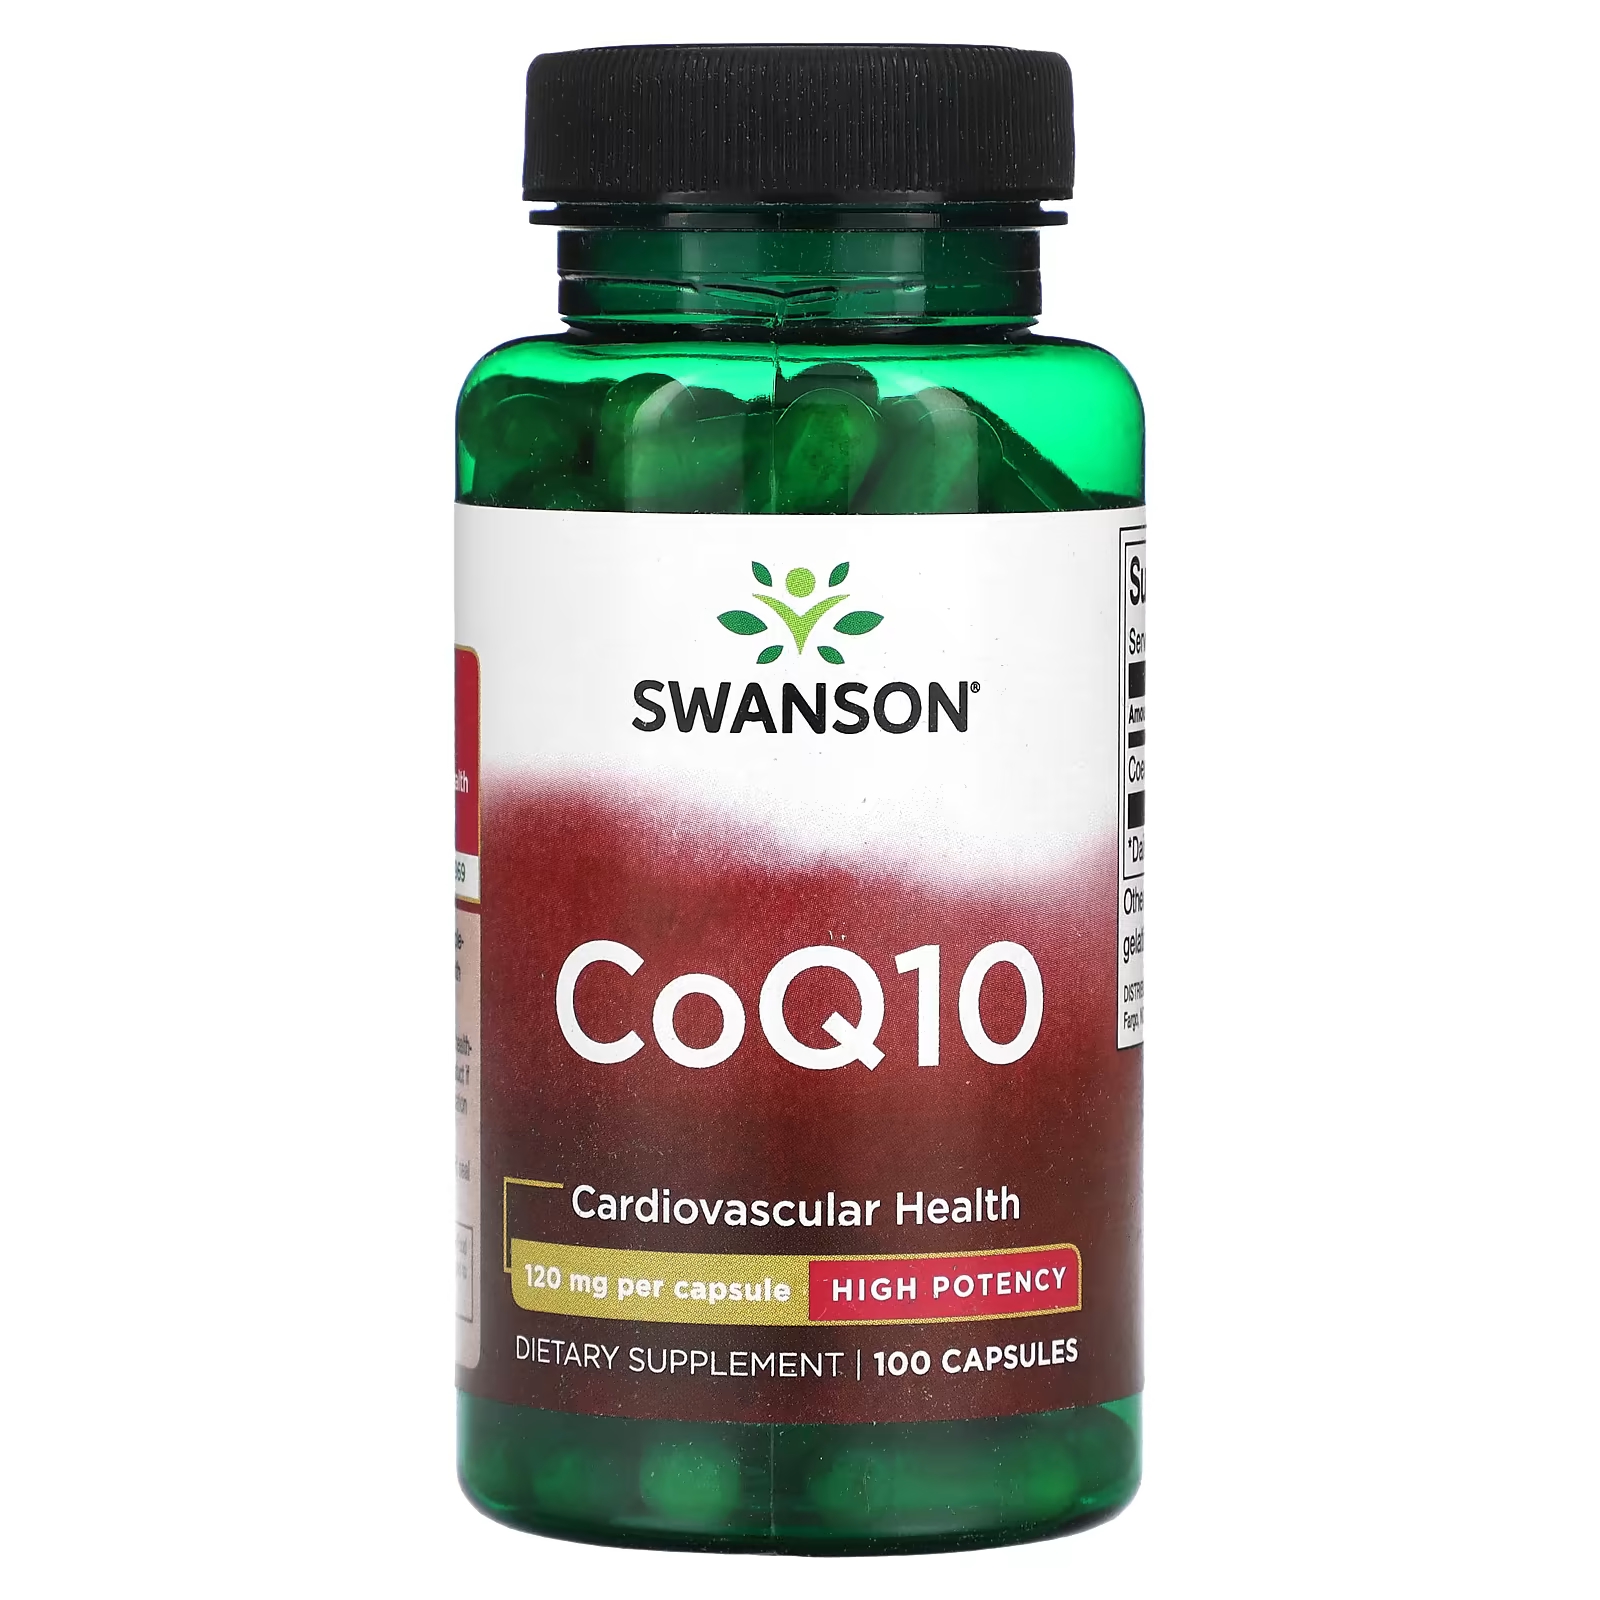 Пищевая добавка Swanson CoQ10 высокой эффективности, 100 капсул